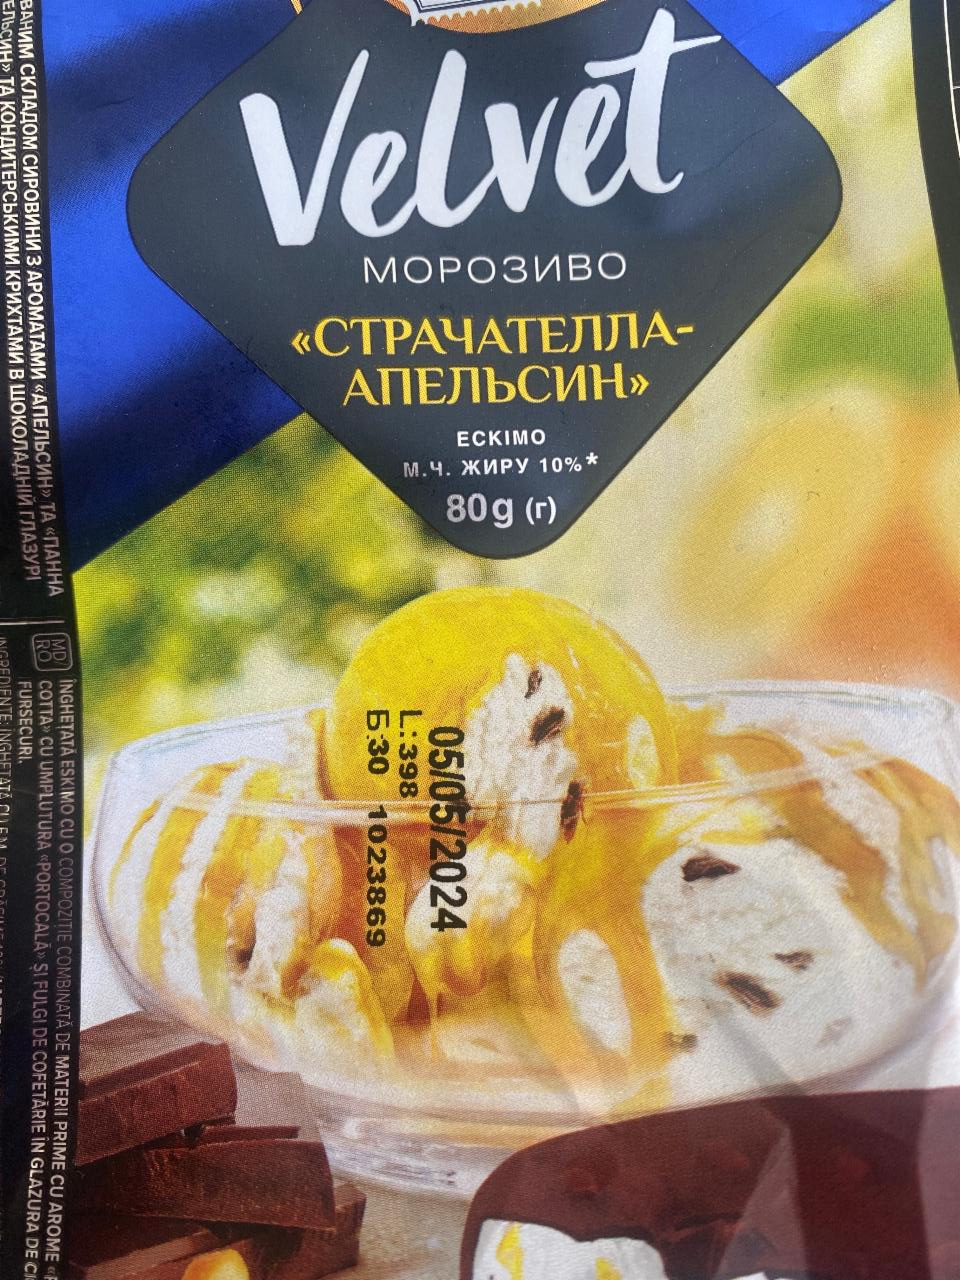 Фото - Морозиво 10% апельсин-страчателла Velvet